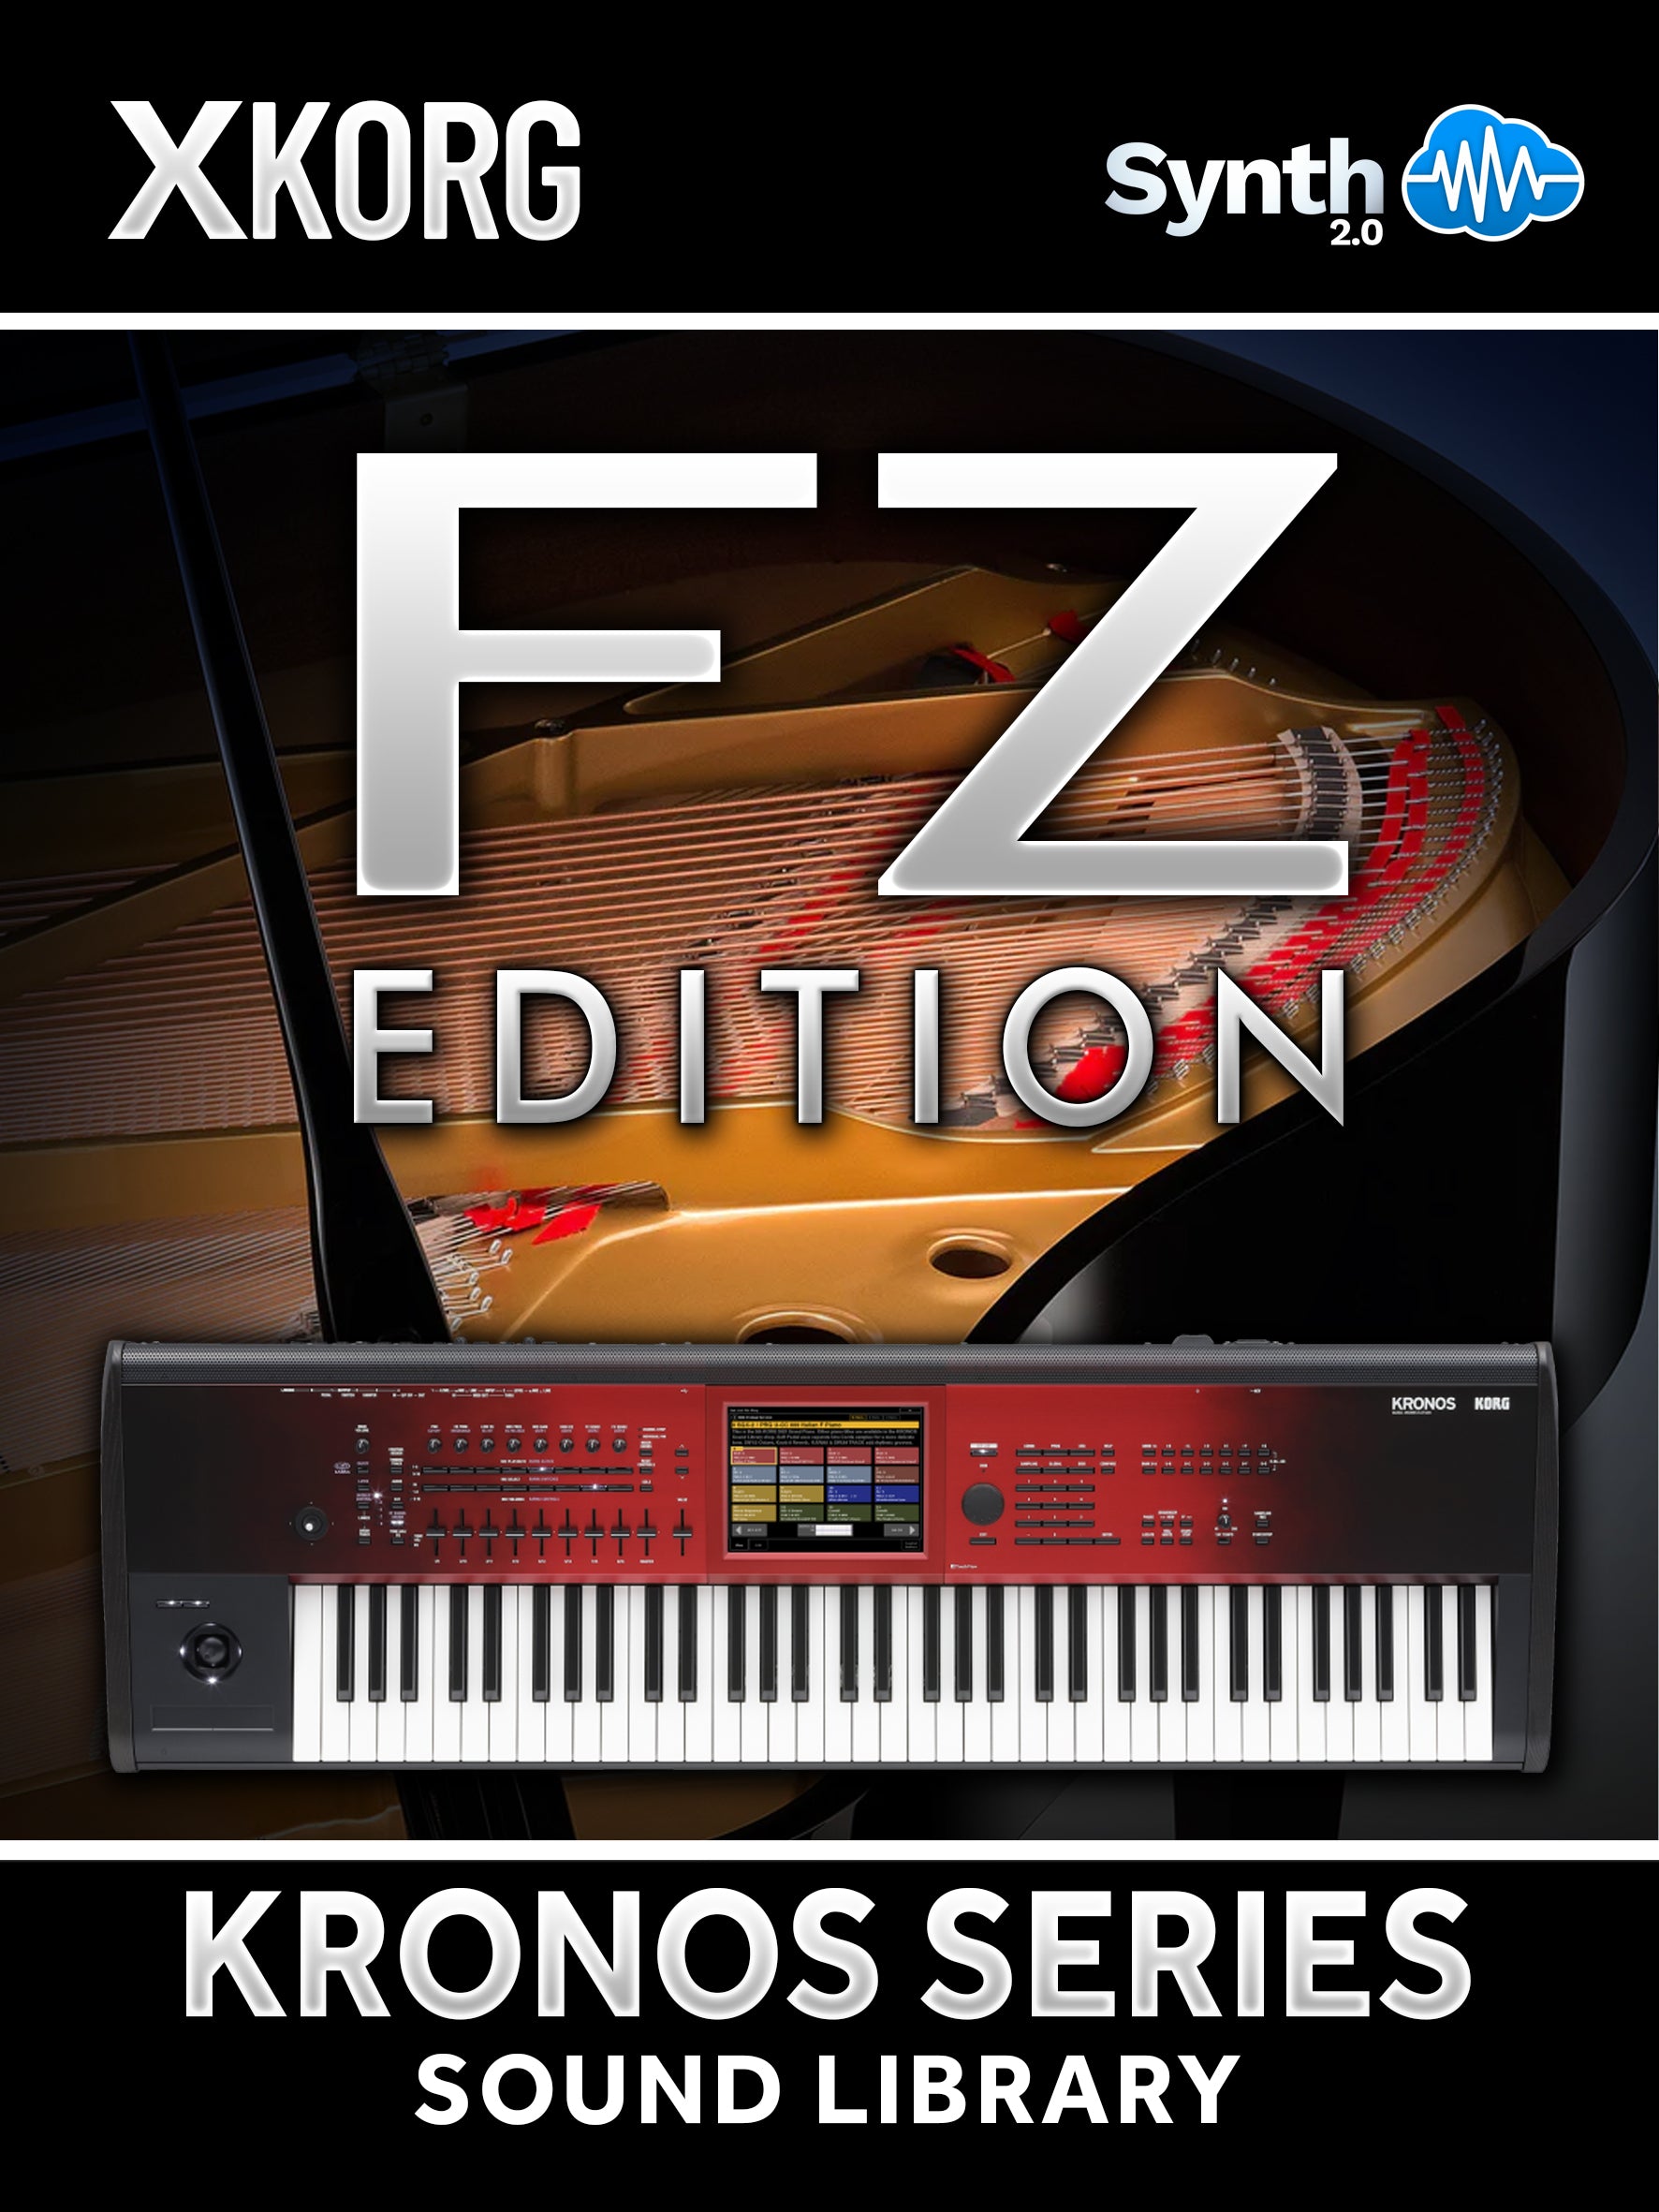 DRS007 - Contemporary Pianos FZ Edition - Korg Kronos ( 4 presets )